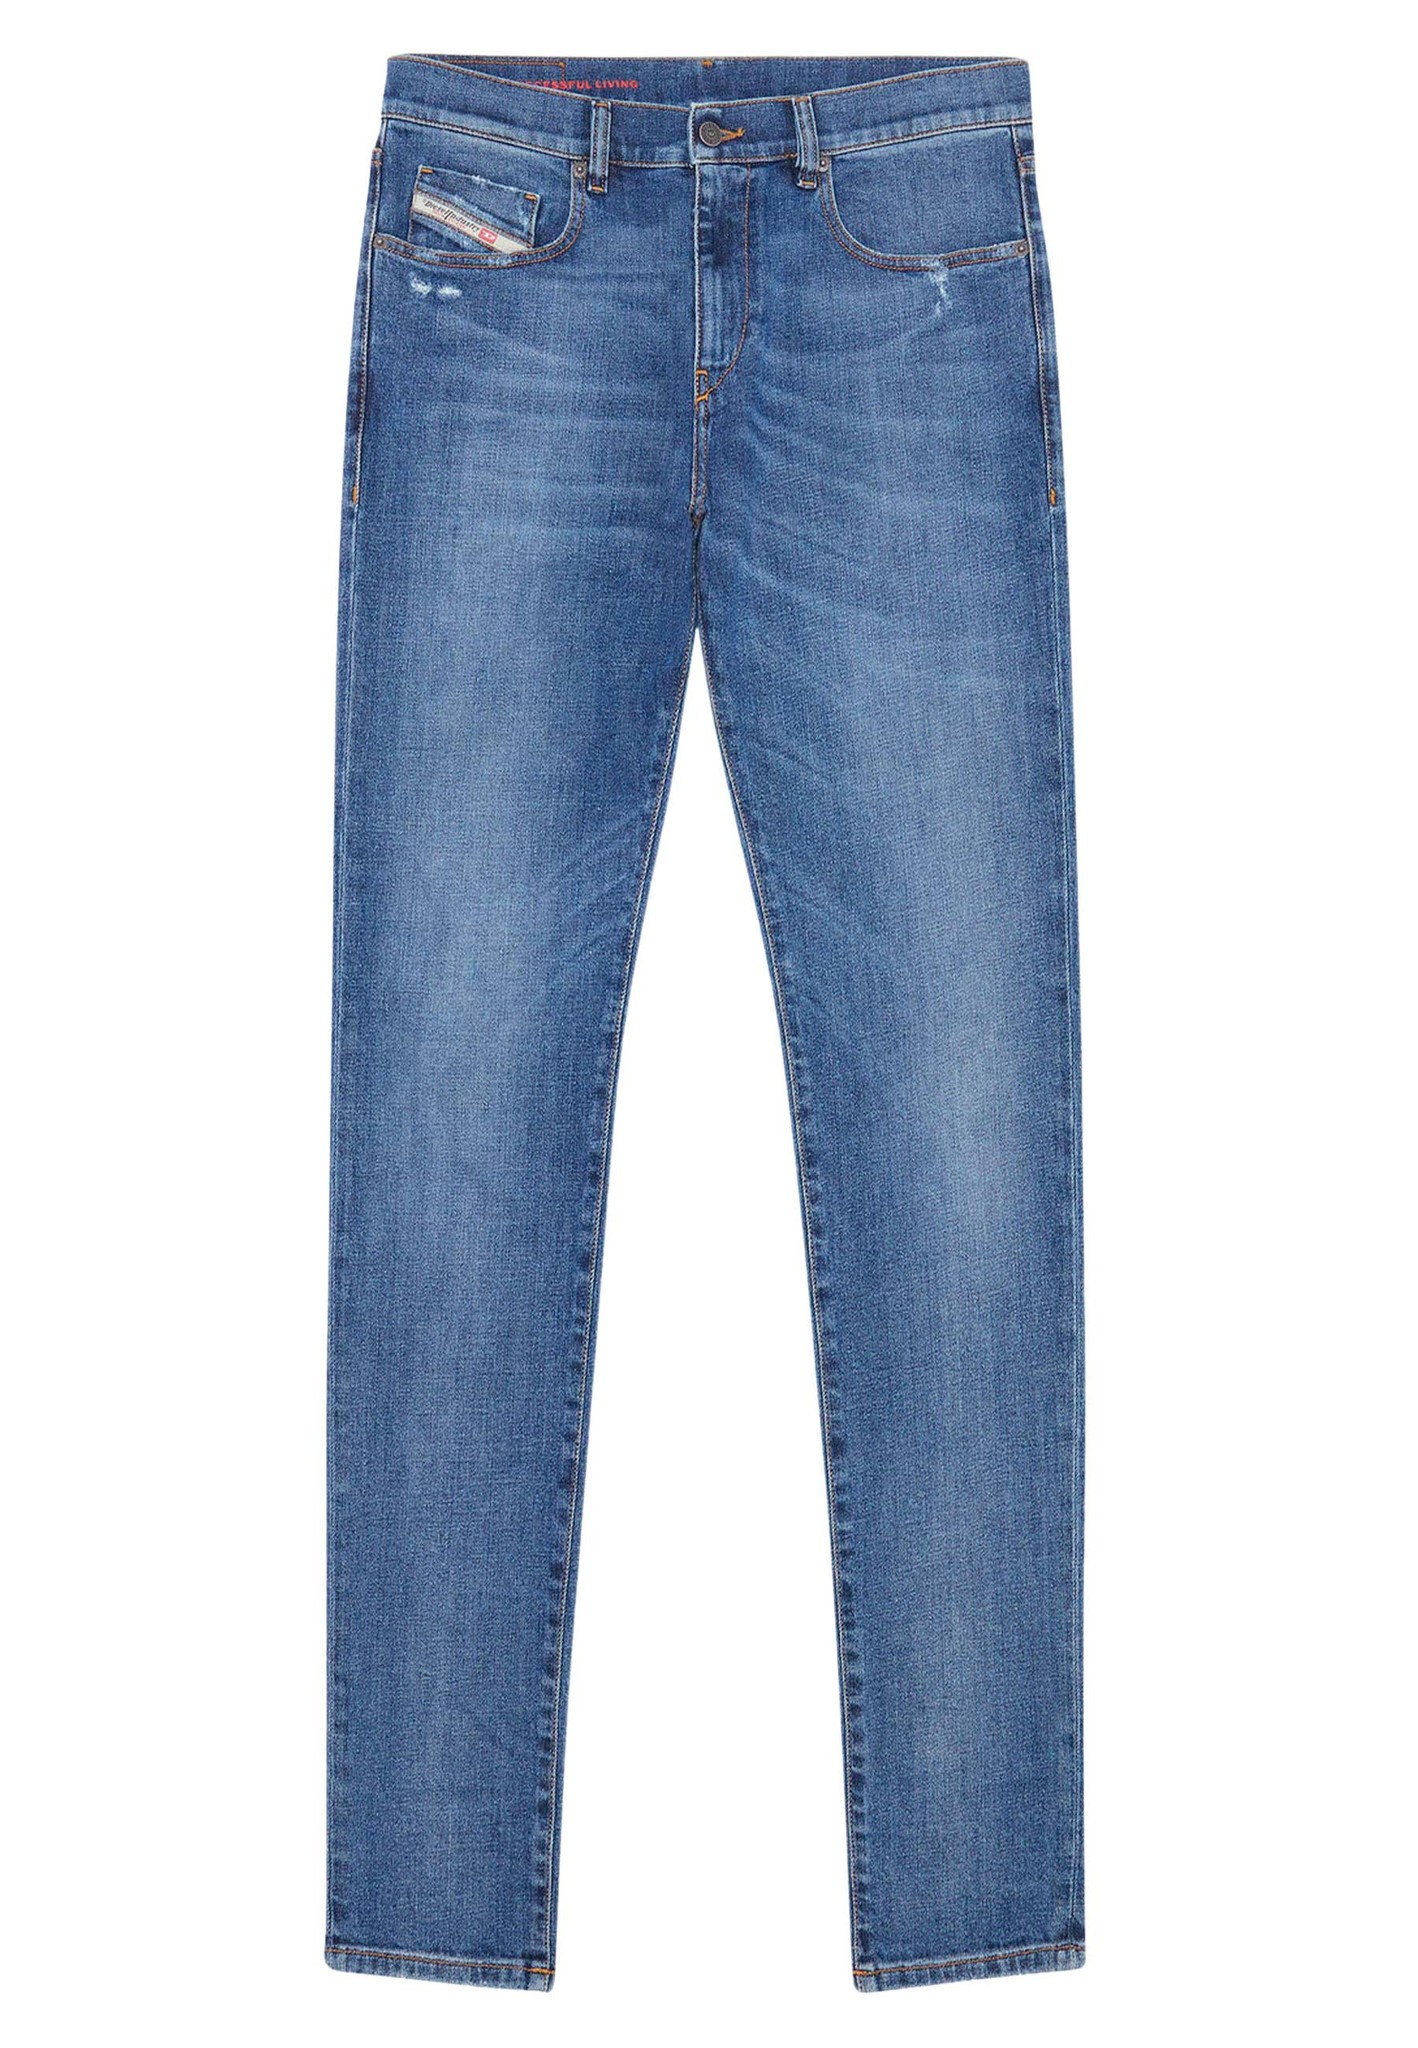 Diesel jeans blauw Heren maat 29/32